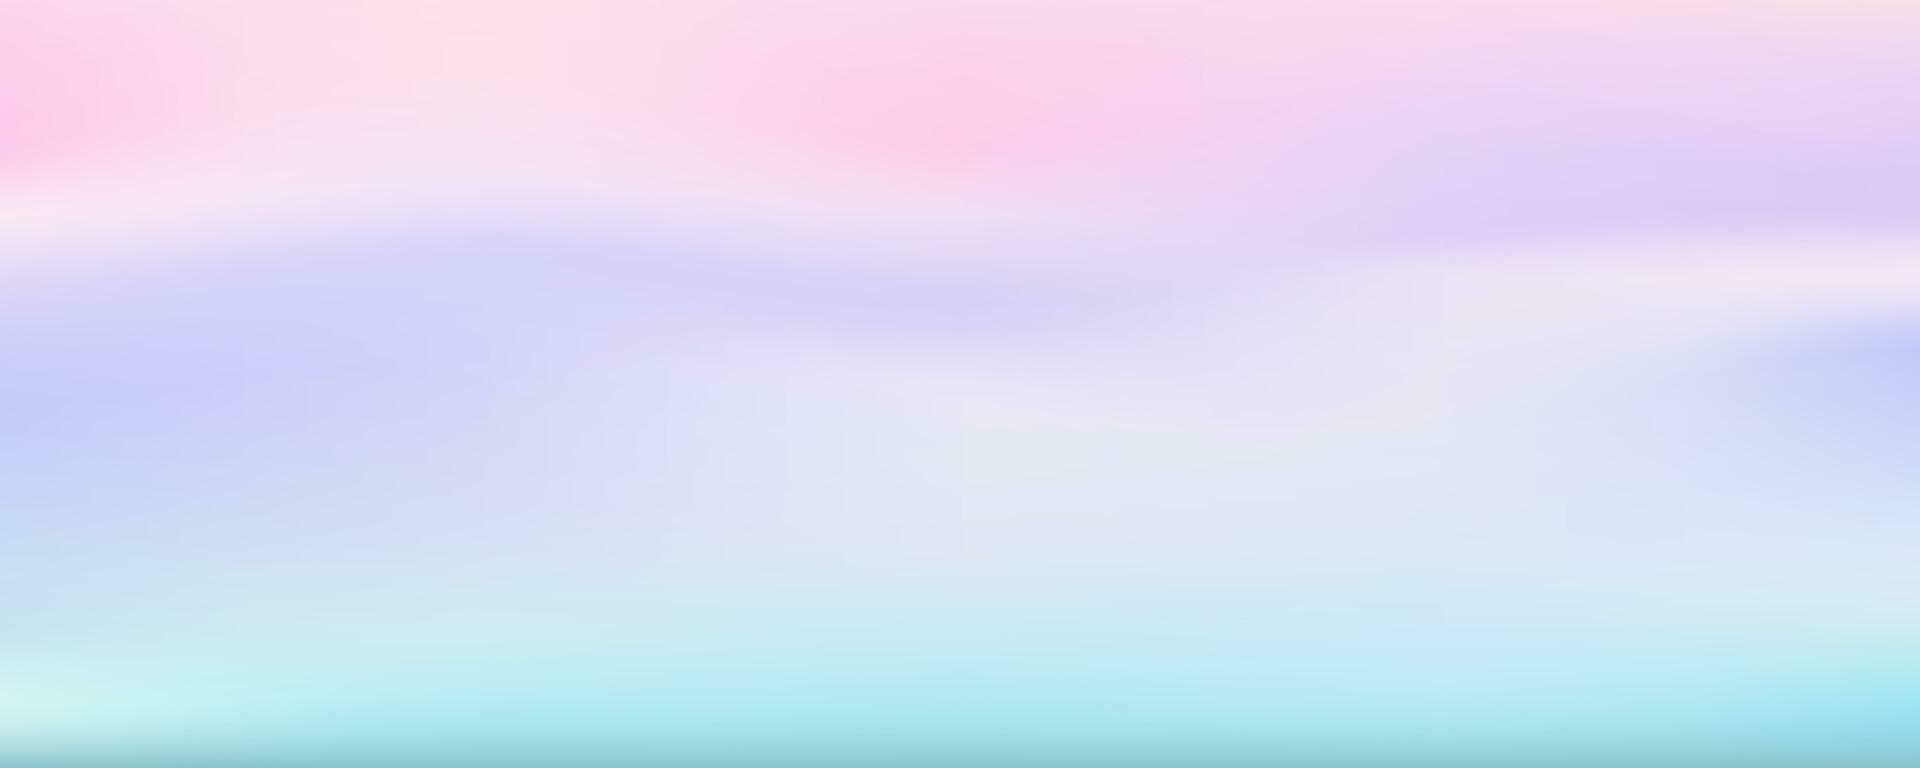 Rosa e azul céu fundo. abstrato roxa inverno panorama. aguarela tolet brilhante ilustração. vetor modelo.